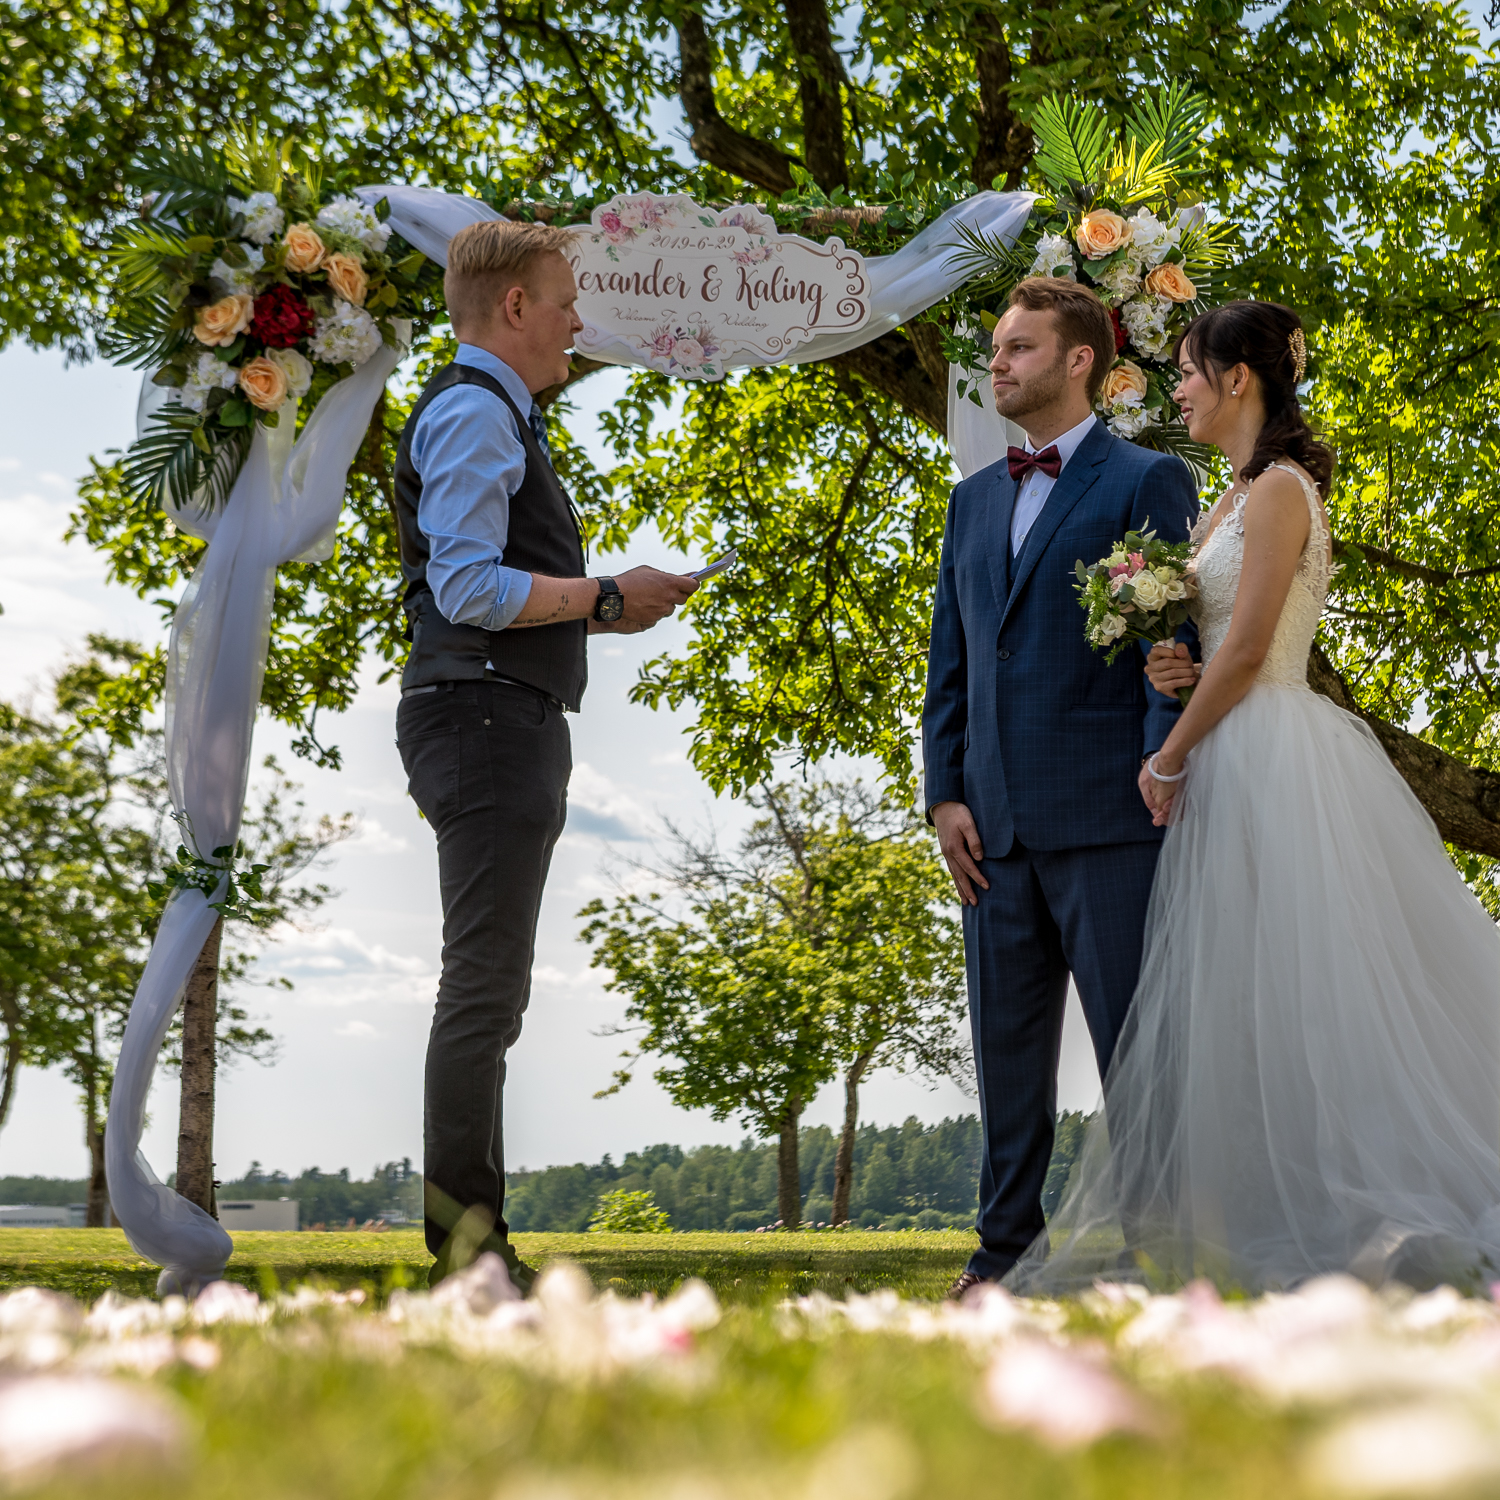 Wedding ceremony in Västerås